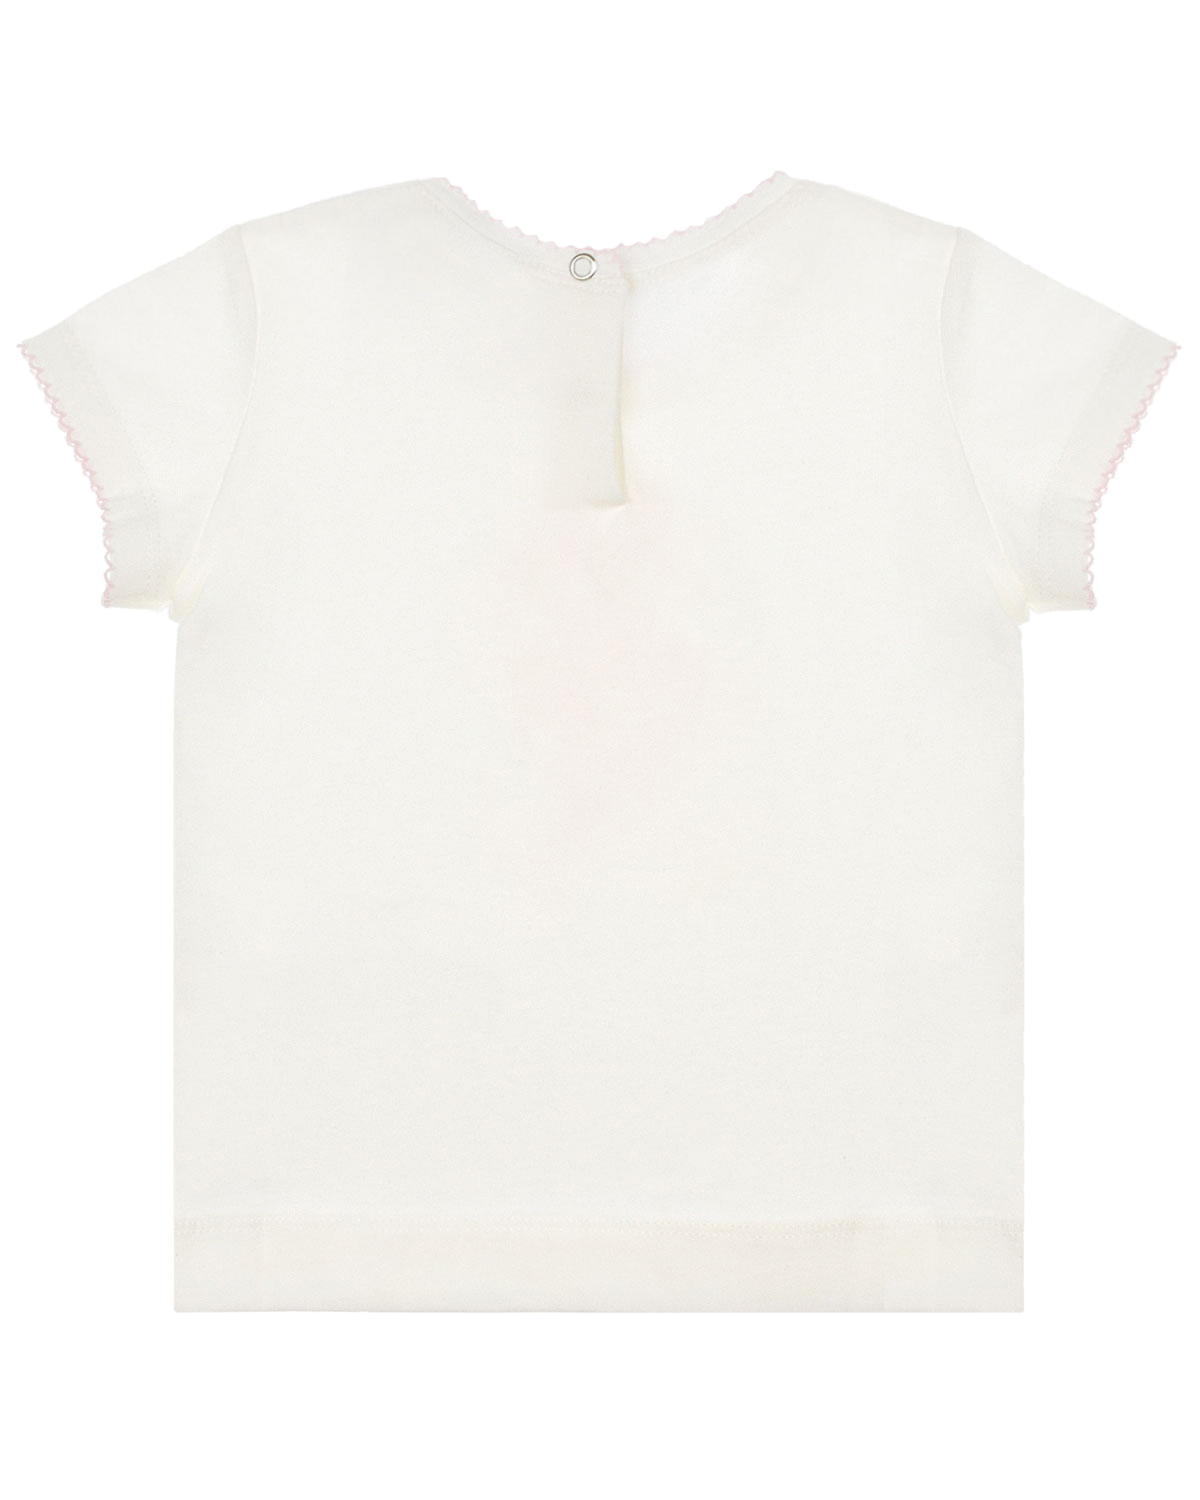 Белая футболка с принтом "пуанты" Monnalisa детская, размер 74, цвет белый - фото 2